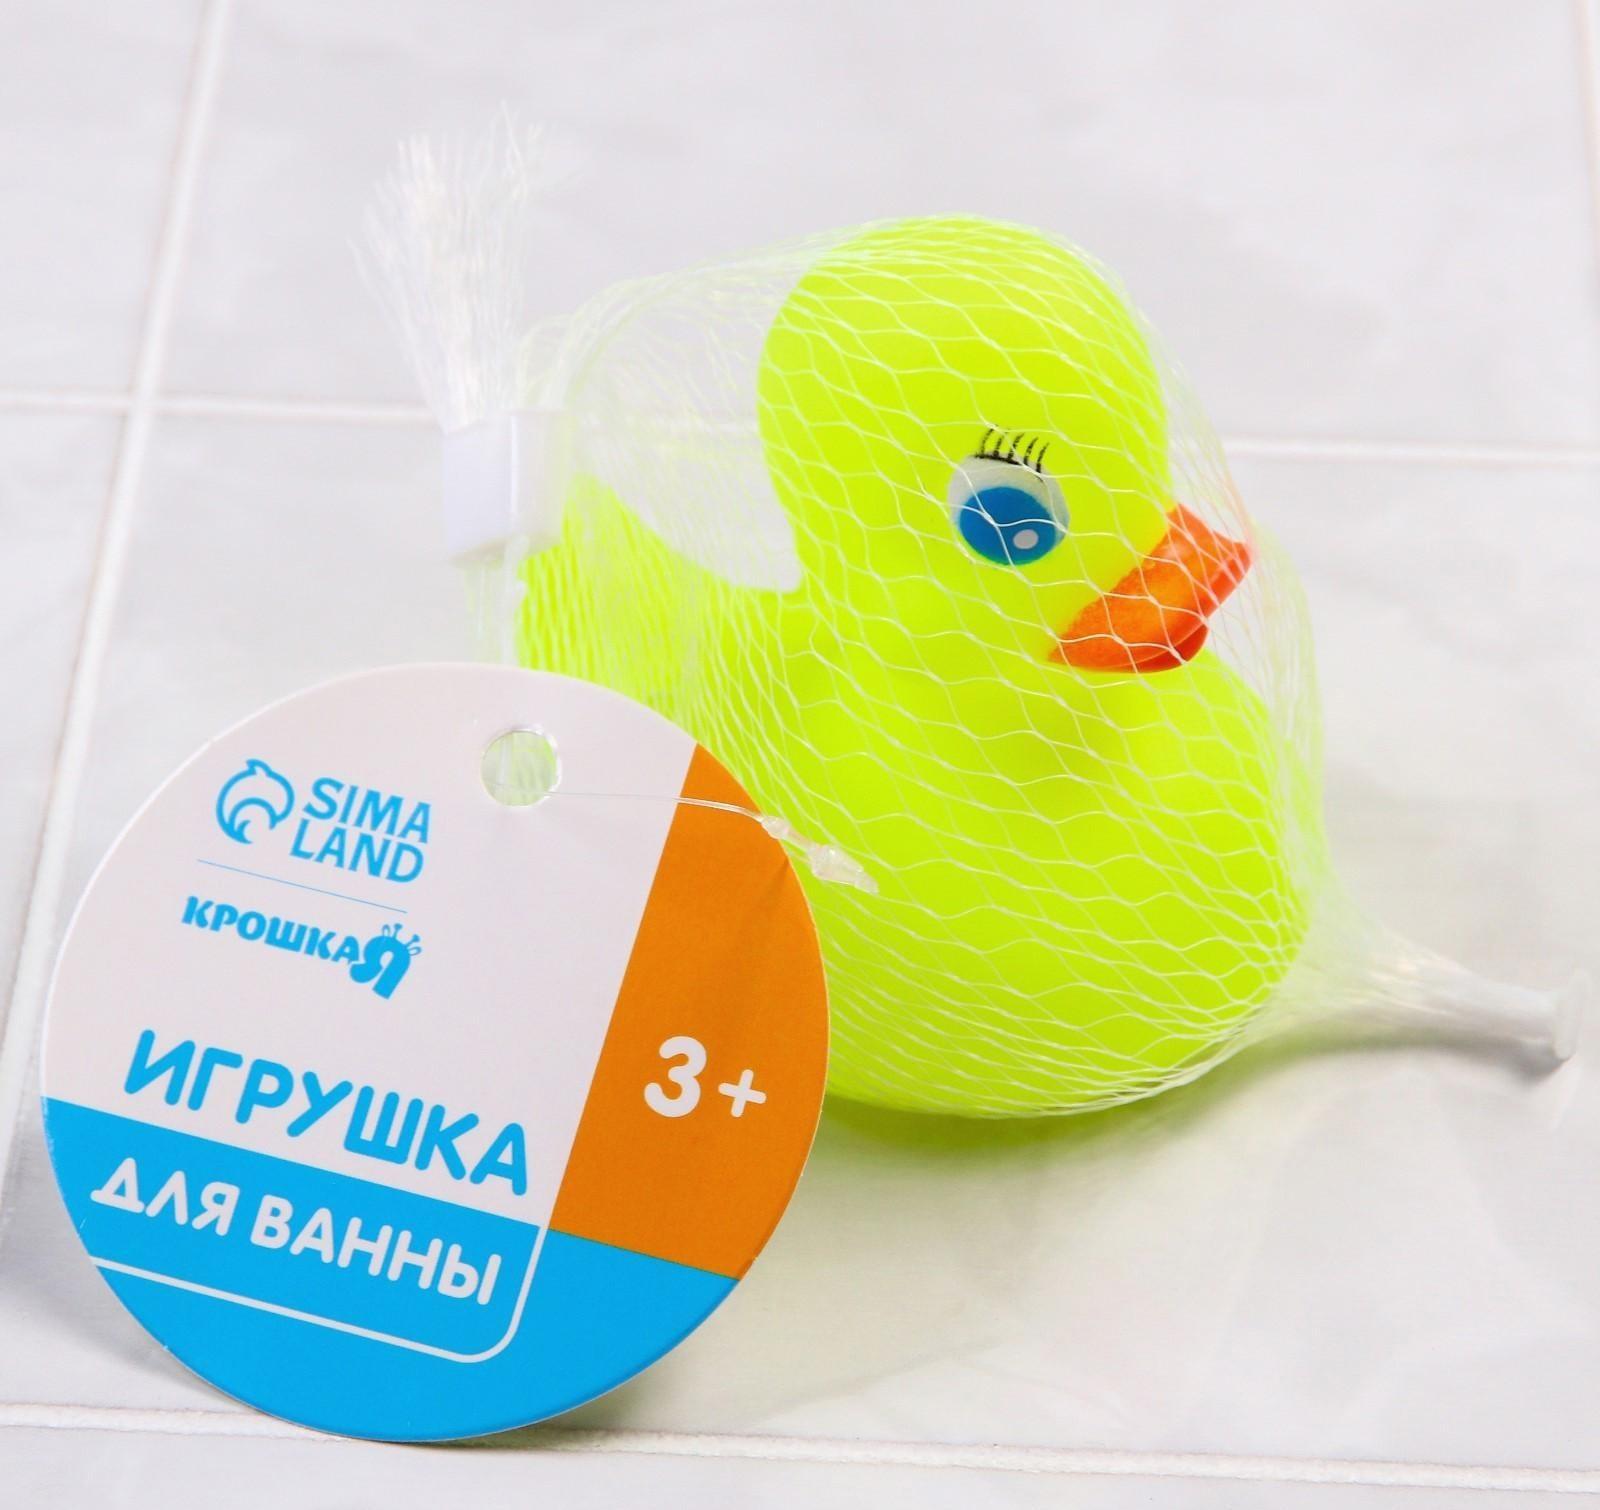 Резиновая игрушка для игры в ванной «Уточка»